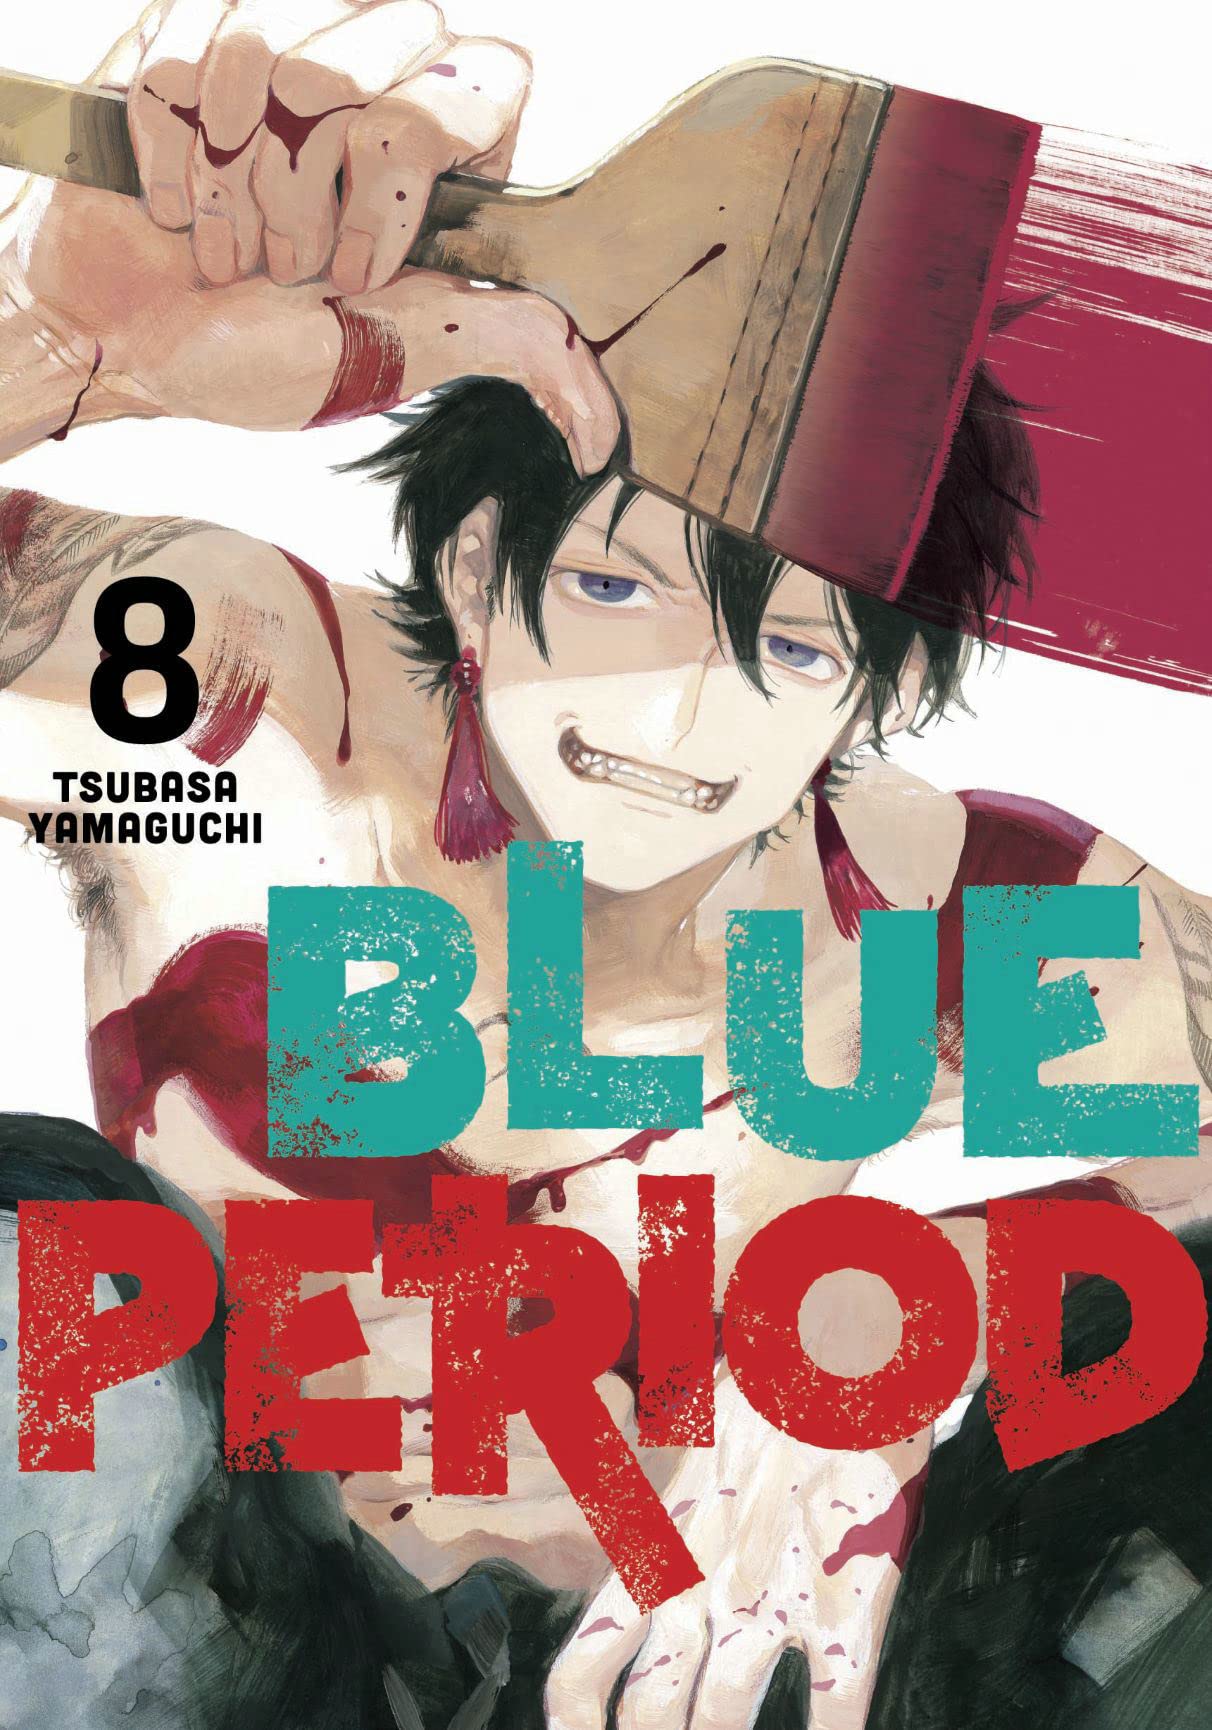 Blue Period Vol. 08